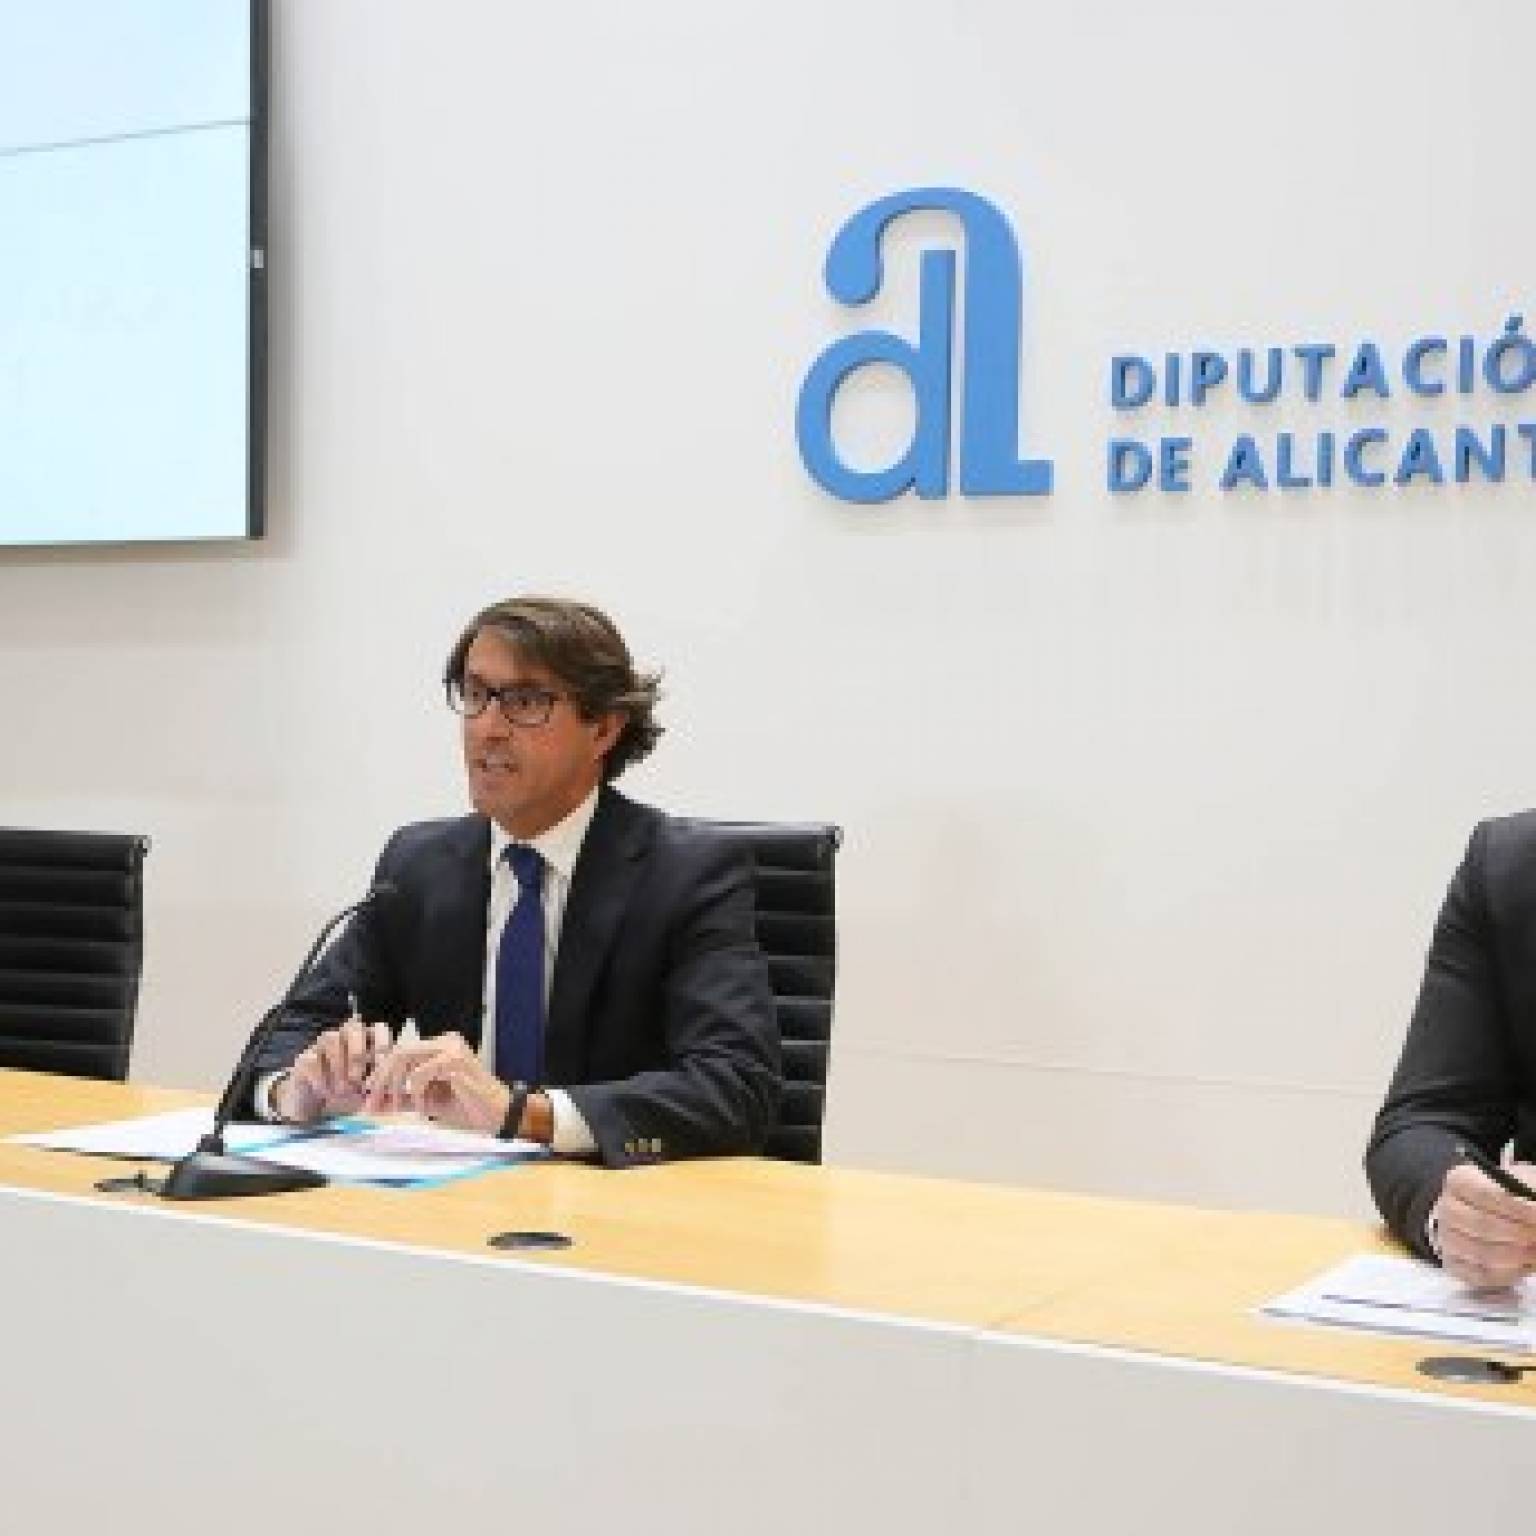 Alicante Capital de la Innovación, Smart Primary